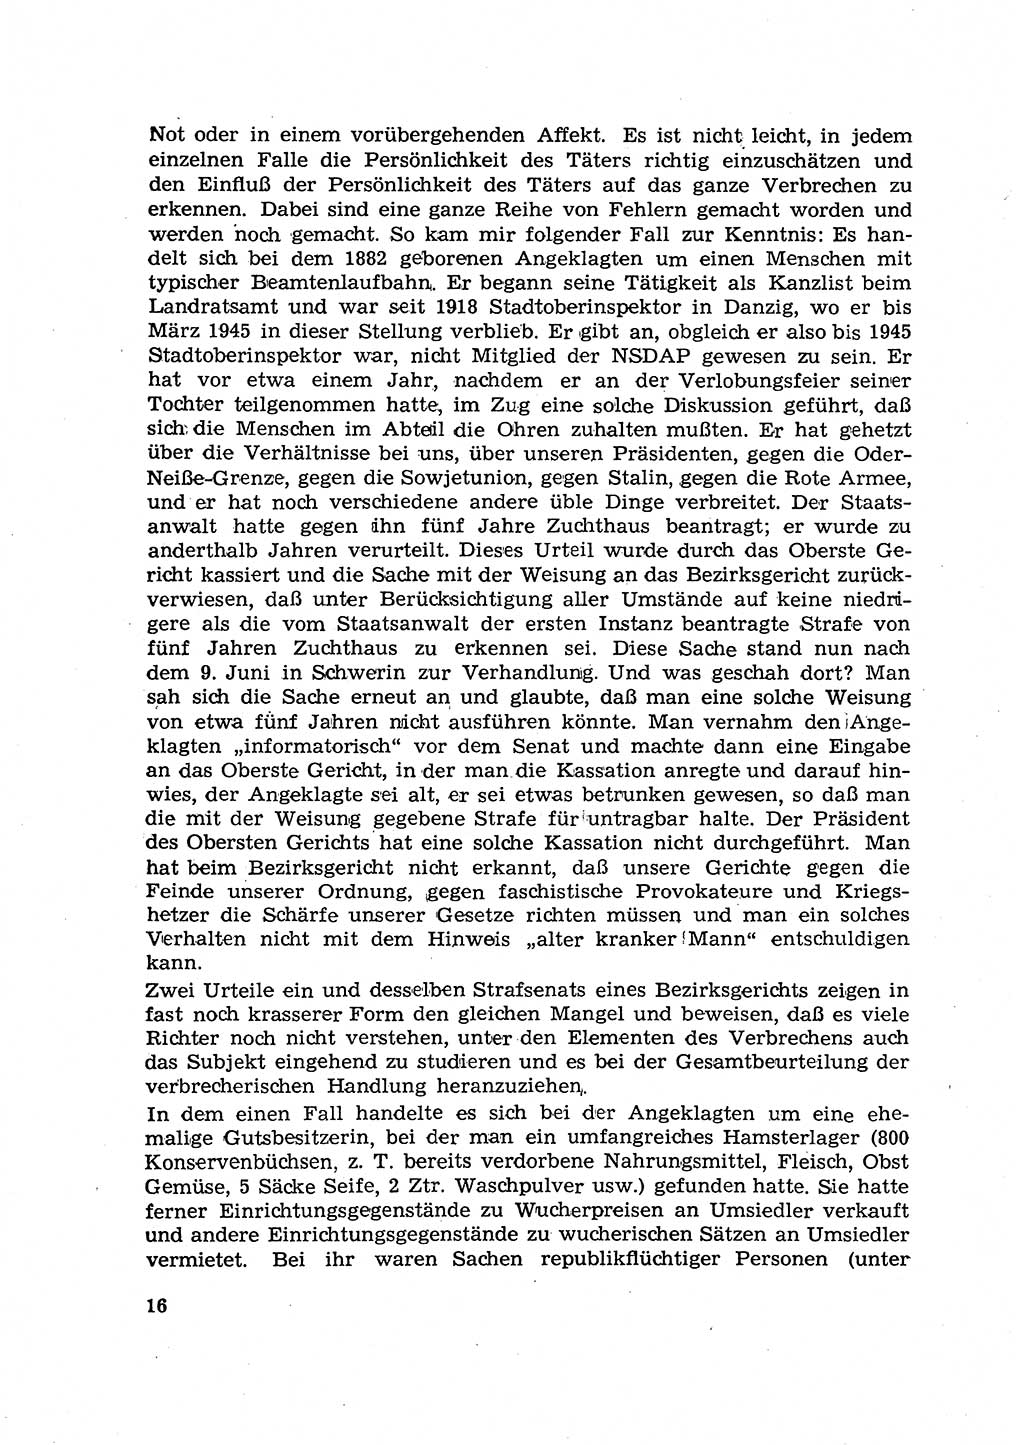 Hauptaufgaben der Justiz [Deutsche Demokratische Republik (DDR)] bei der Durchführung des neuen Kurses 1953, Seite 16 (Hpt.-Aufg. J. DDR 1953, S. 16)